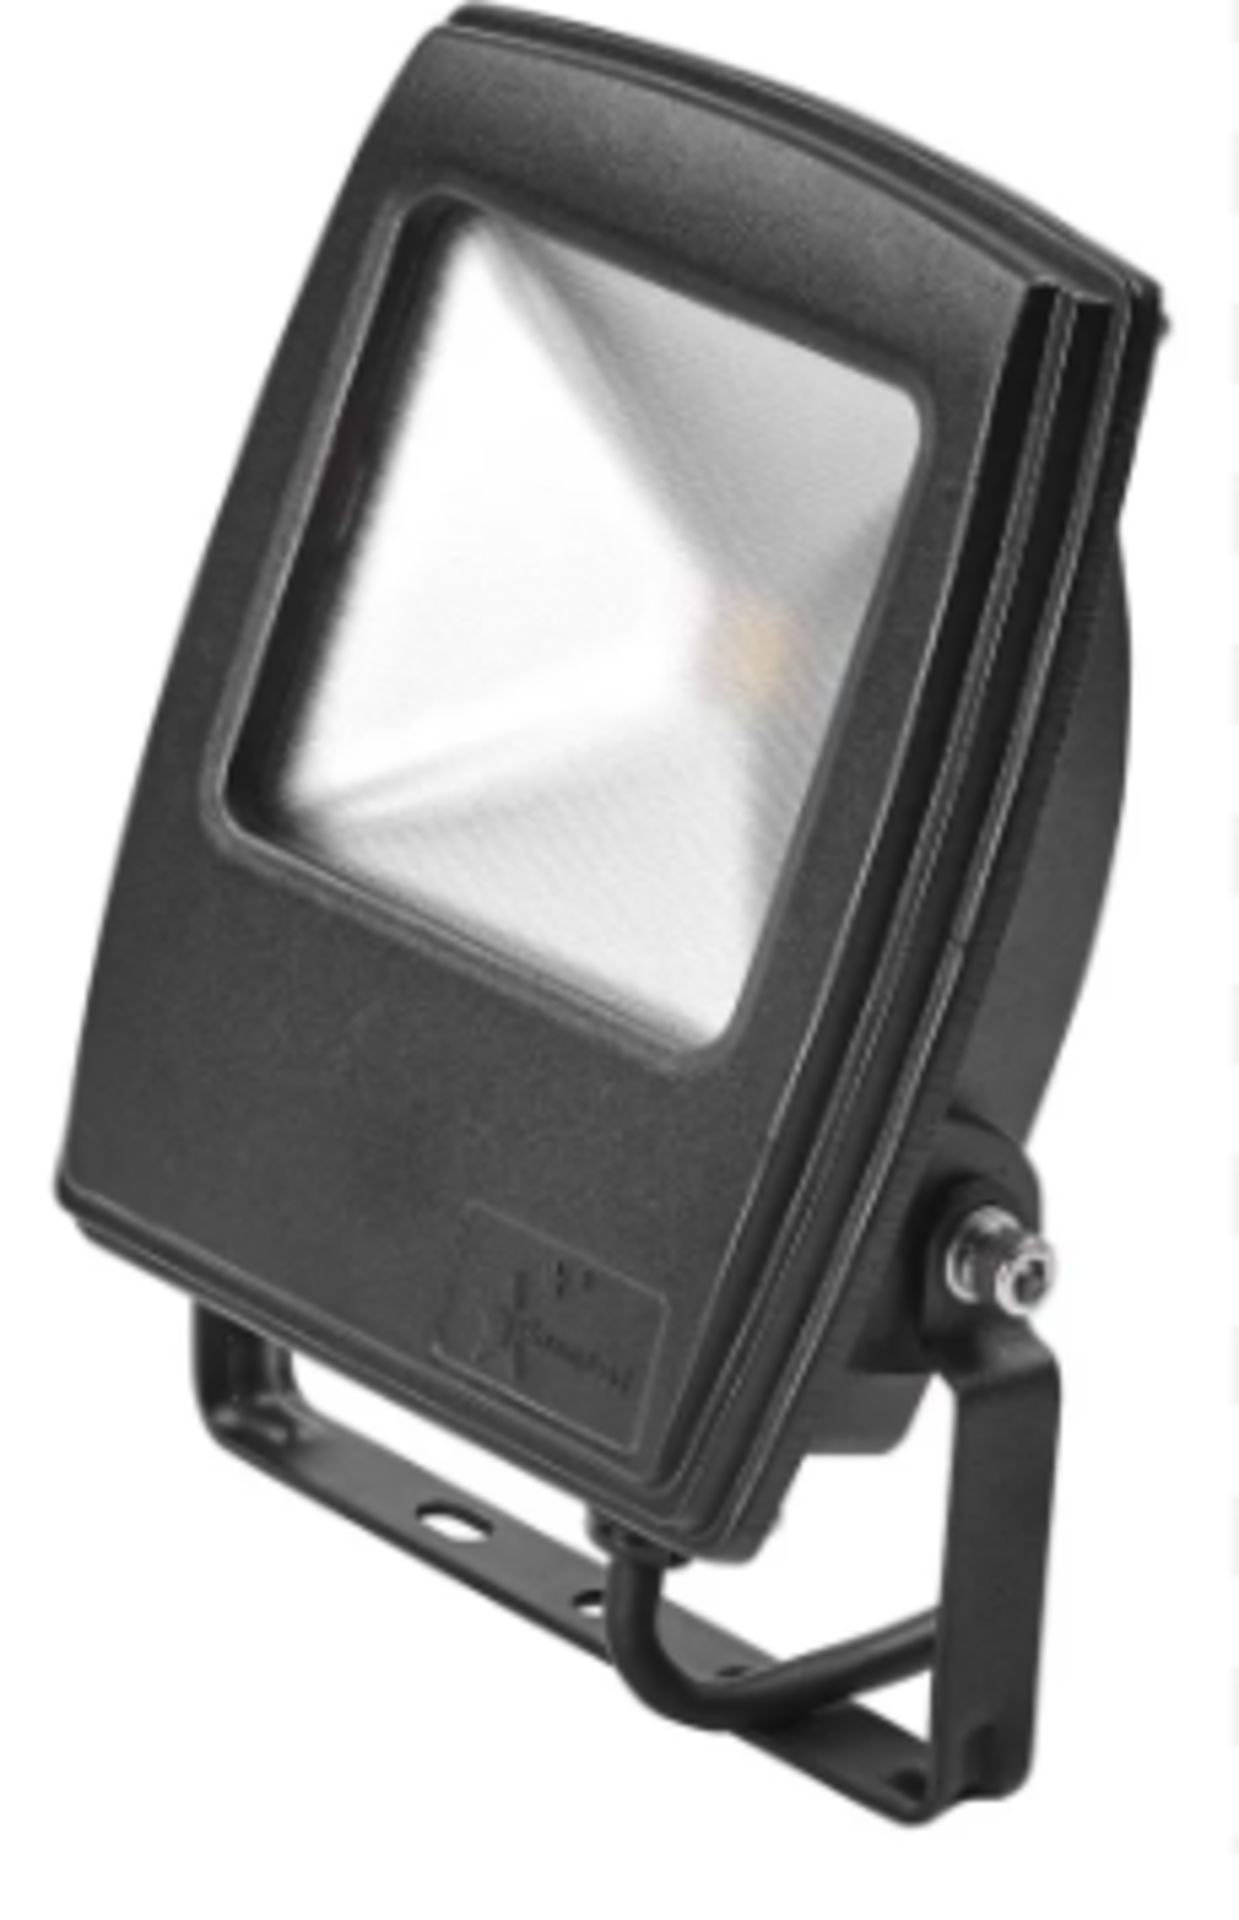 5 x PowerLED Flex LED Floodlight, 1 LED, 10 W, IP66